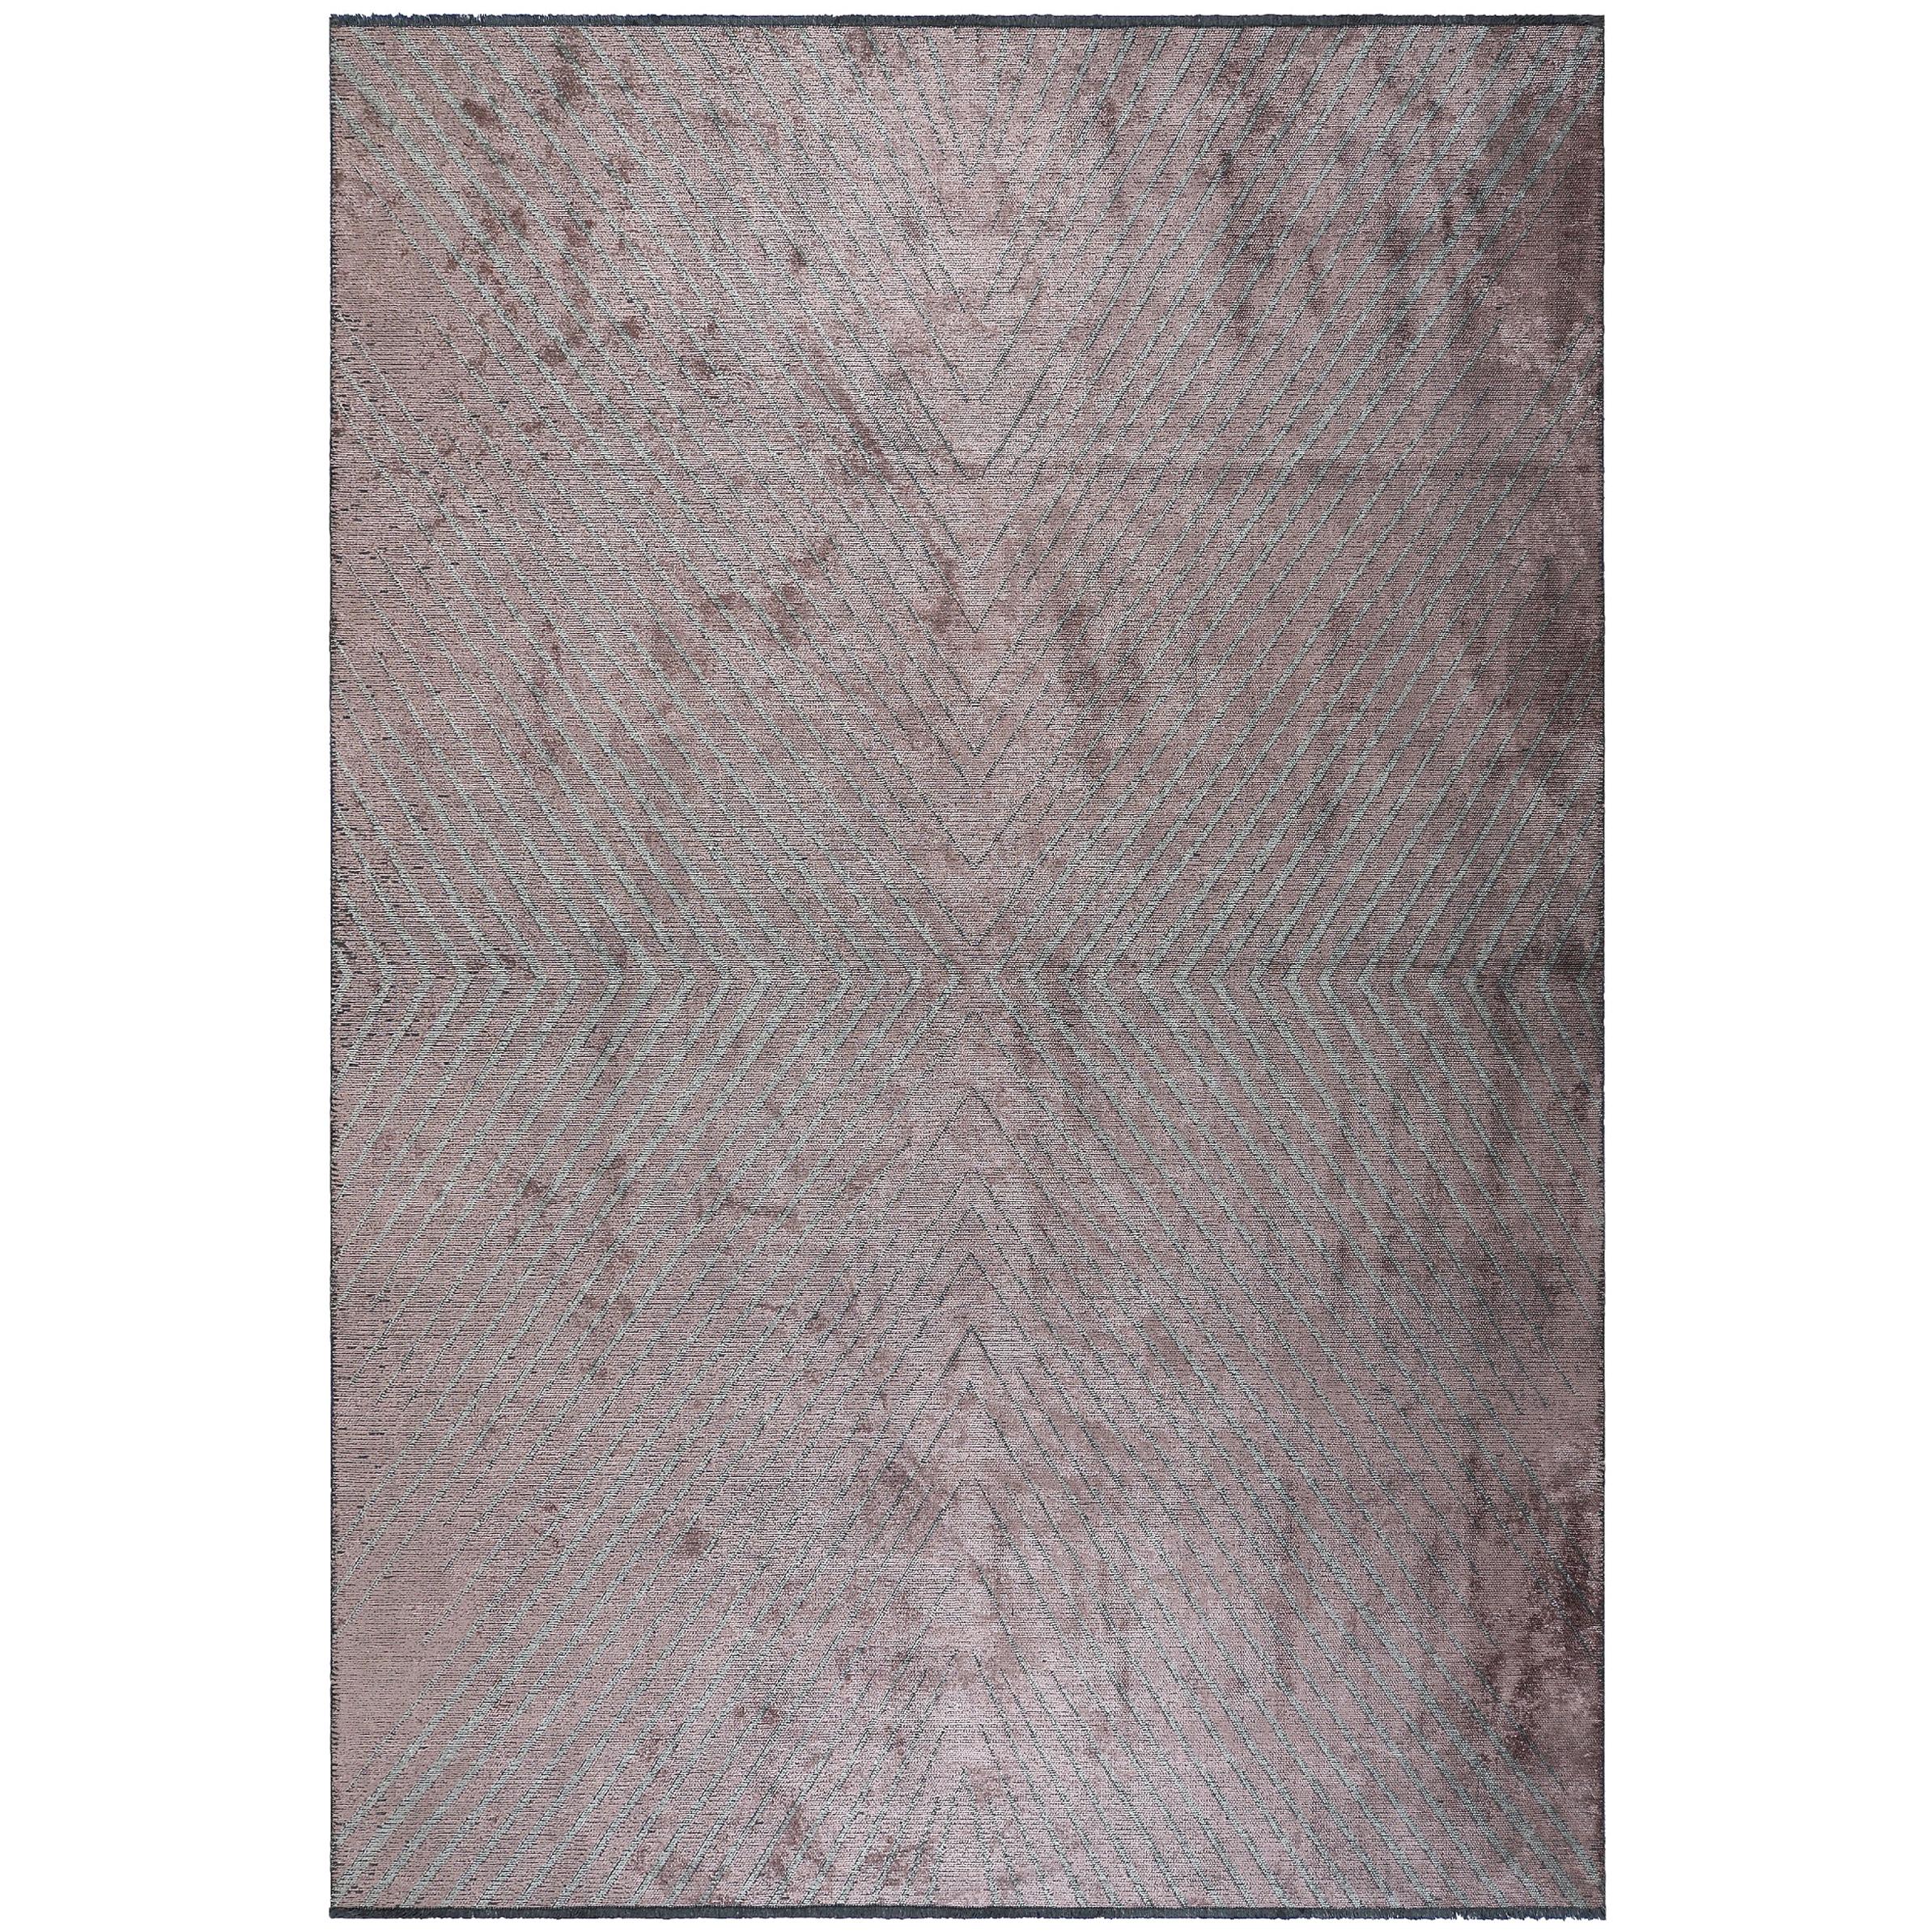 Zeitgenössischer, weicher Semi-Plüsch-Teppich mit Chevron-Muster in Lila und Silbergrau